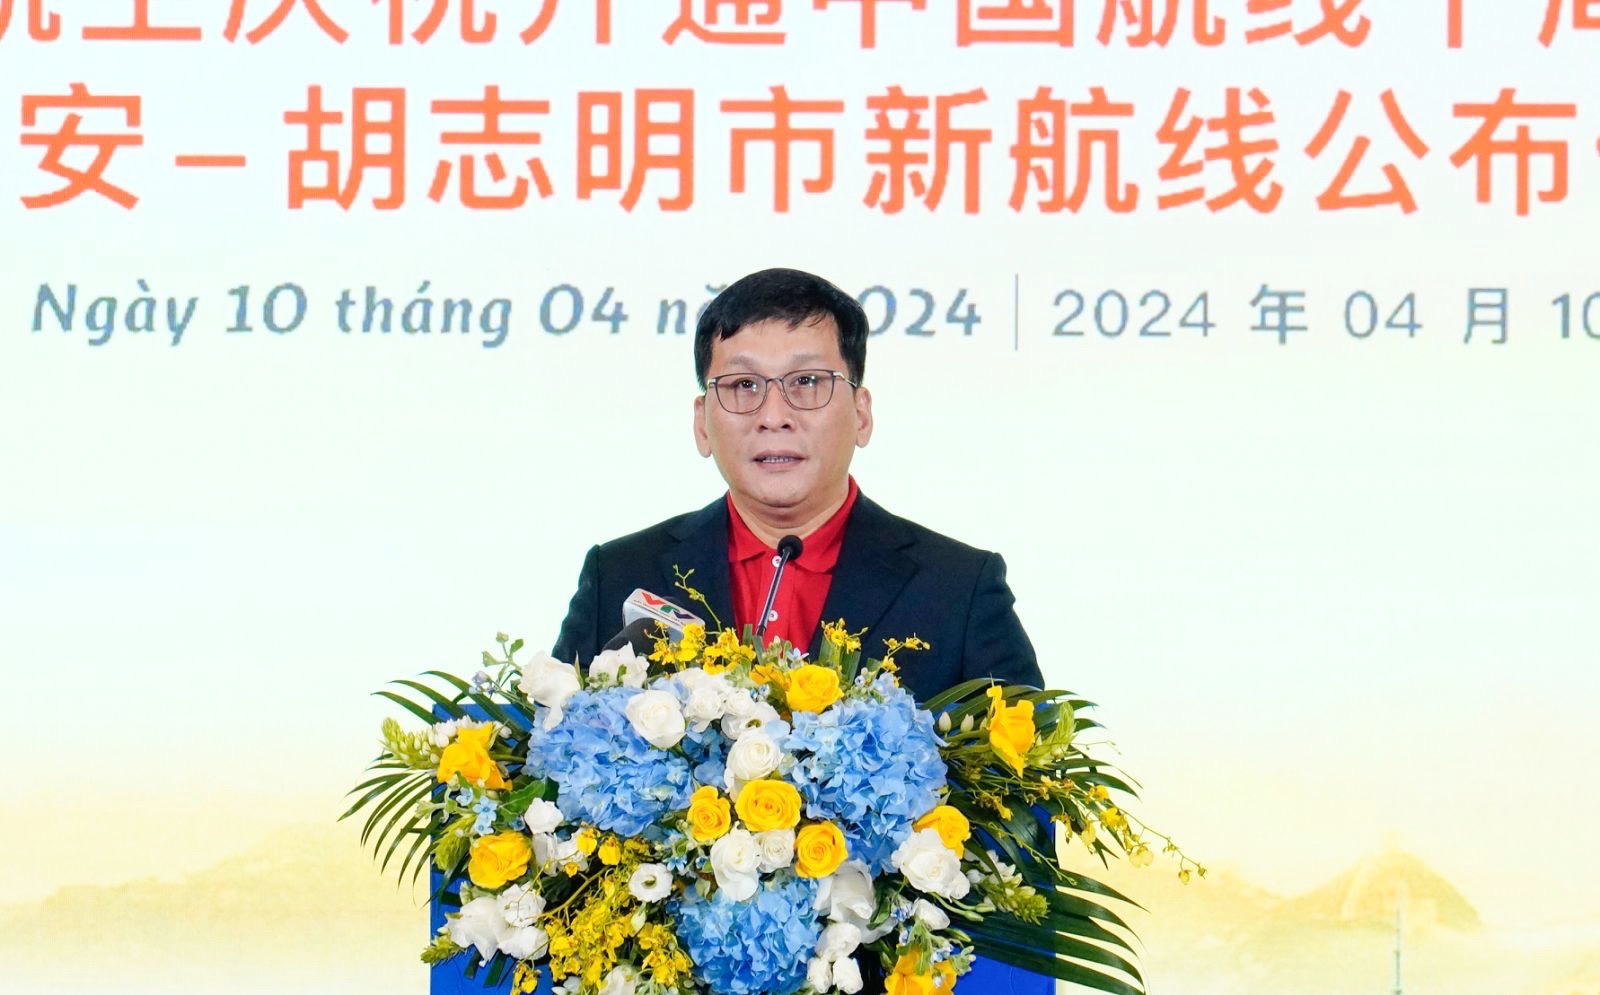 Tổng giám đốc Vietjet Đinh Việt Phương phát biểu tại sự kiện.